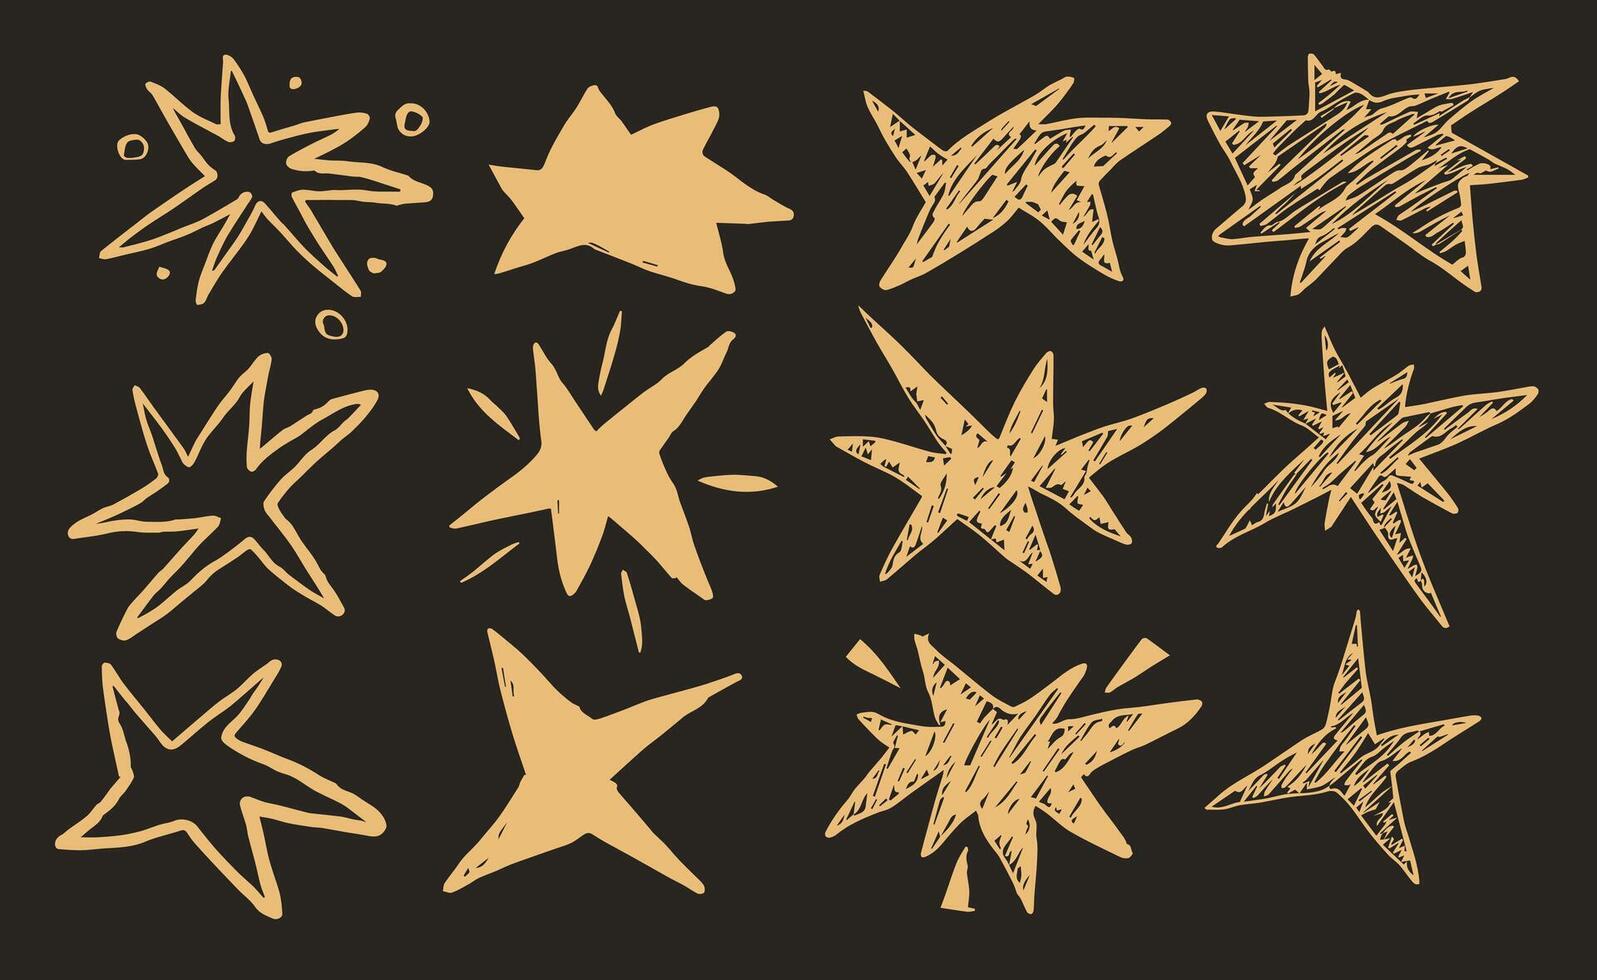 ritad för hand texturerad stjärna former. spiked grunge träkol klottra stjärnor. freehand krita penna starry element. vektor illustration